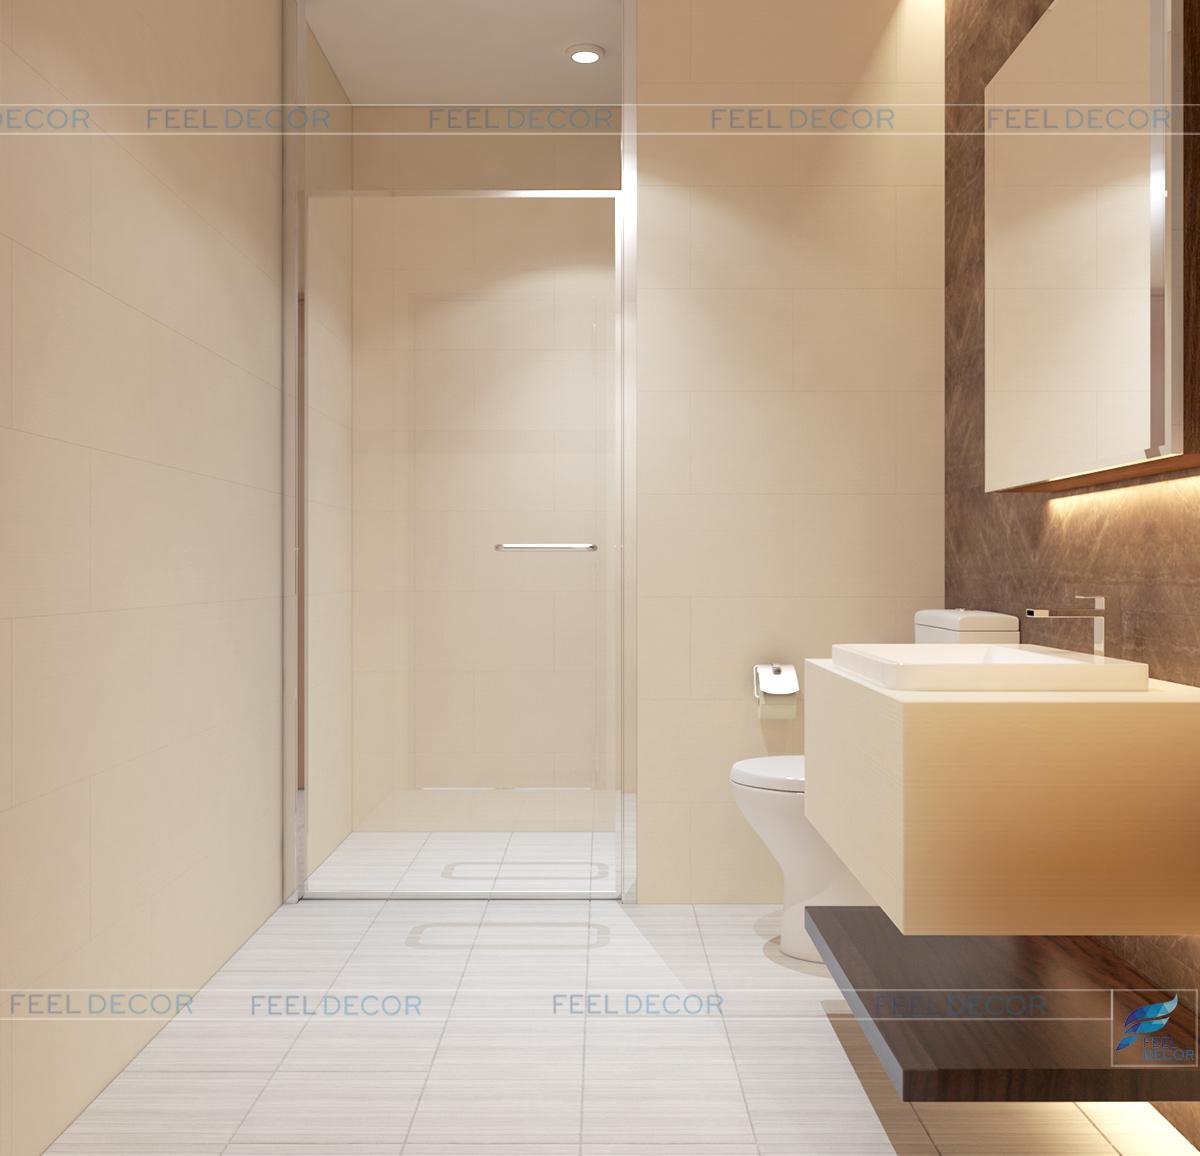 Nội thất tối giản và hiện đại mang lại sự tinh tế cho phòng tắm